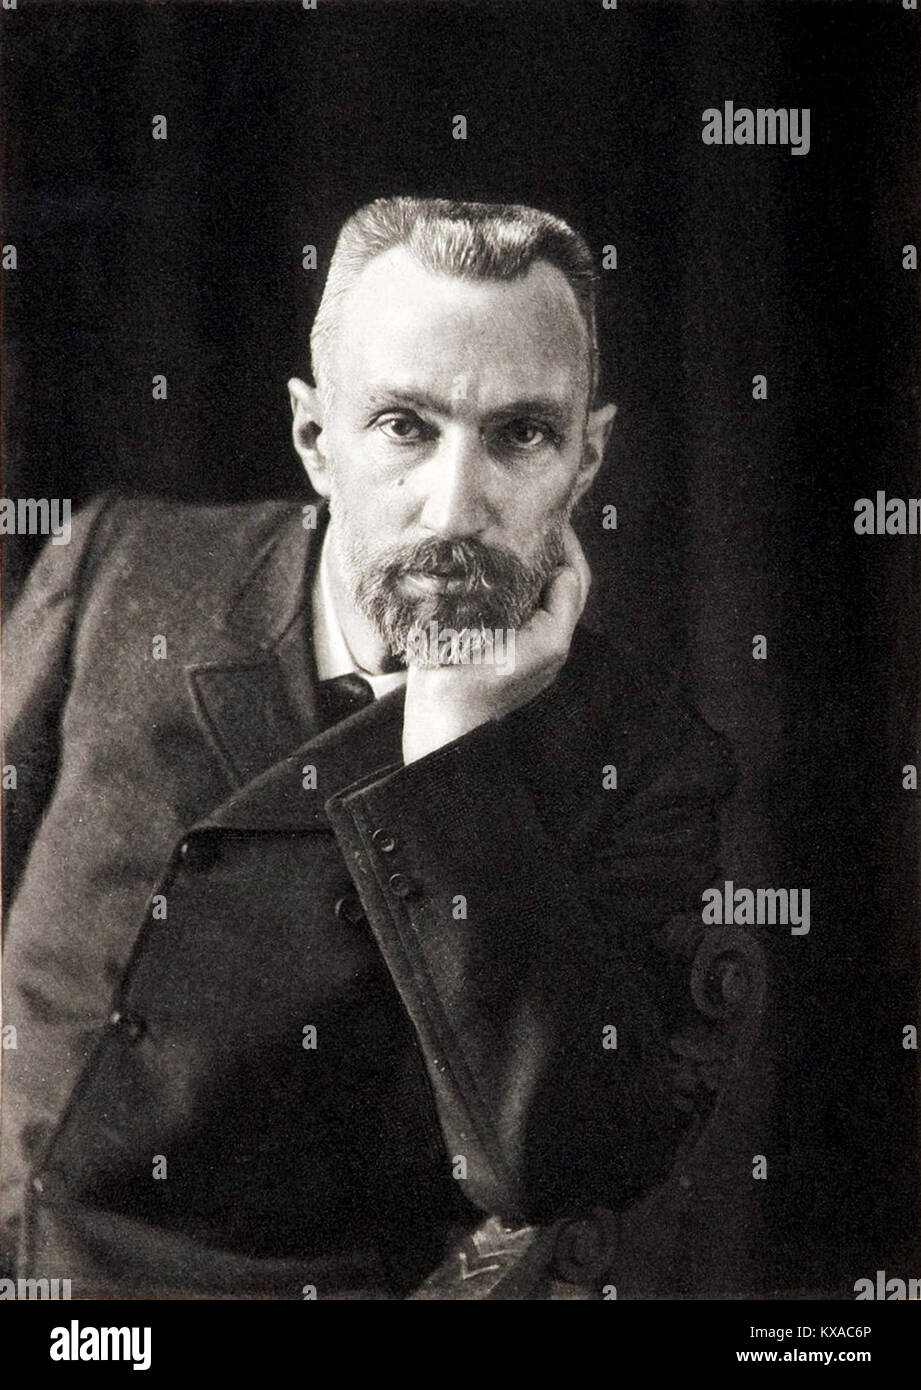 Pierre Curie, französischer Physiker, ein Pionier in der Kristallographie, Magnetismus, piezoelektrizität und Radioaktivität. Im Jahr 1903 erhielt er den Nobelpreis für Physik zusammen mit seiner Frau, Marie Curie, Marie Skłodowska-Curie, Stockfoto